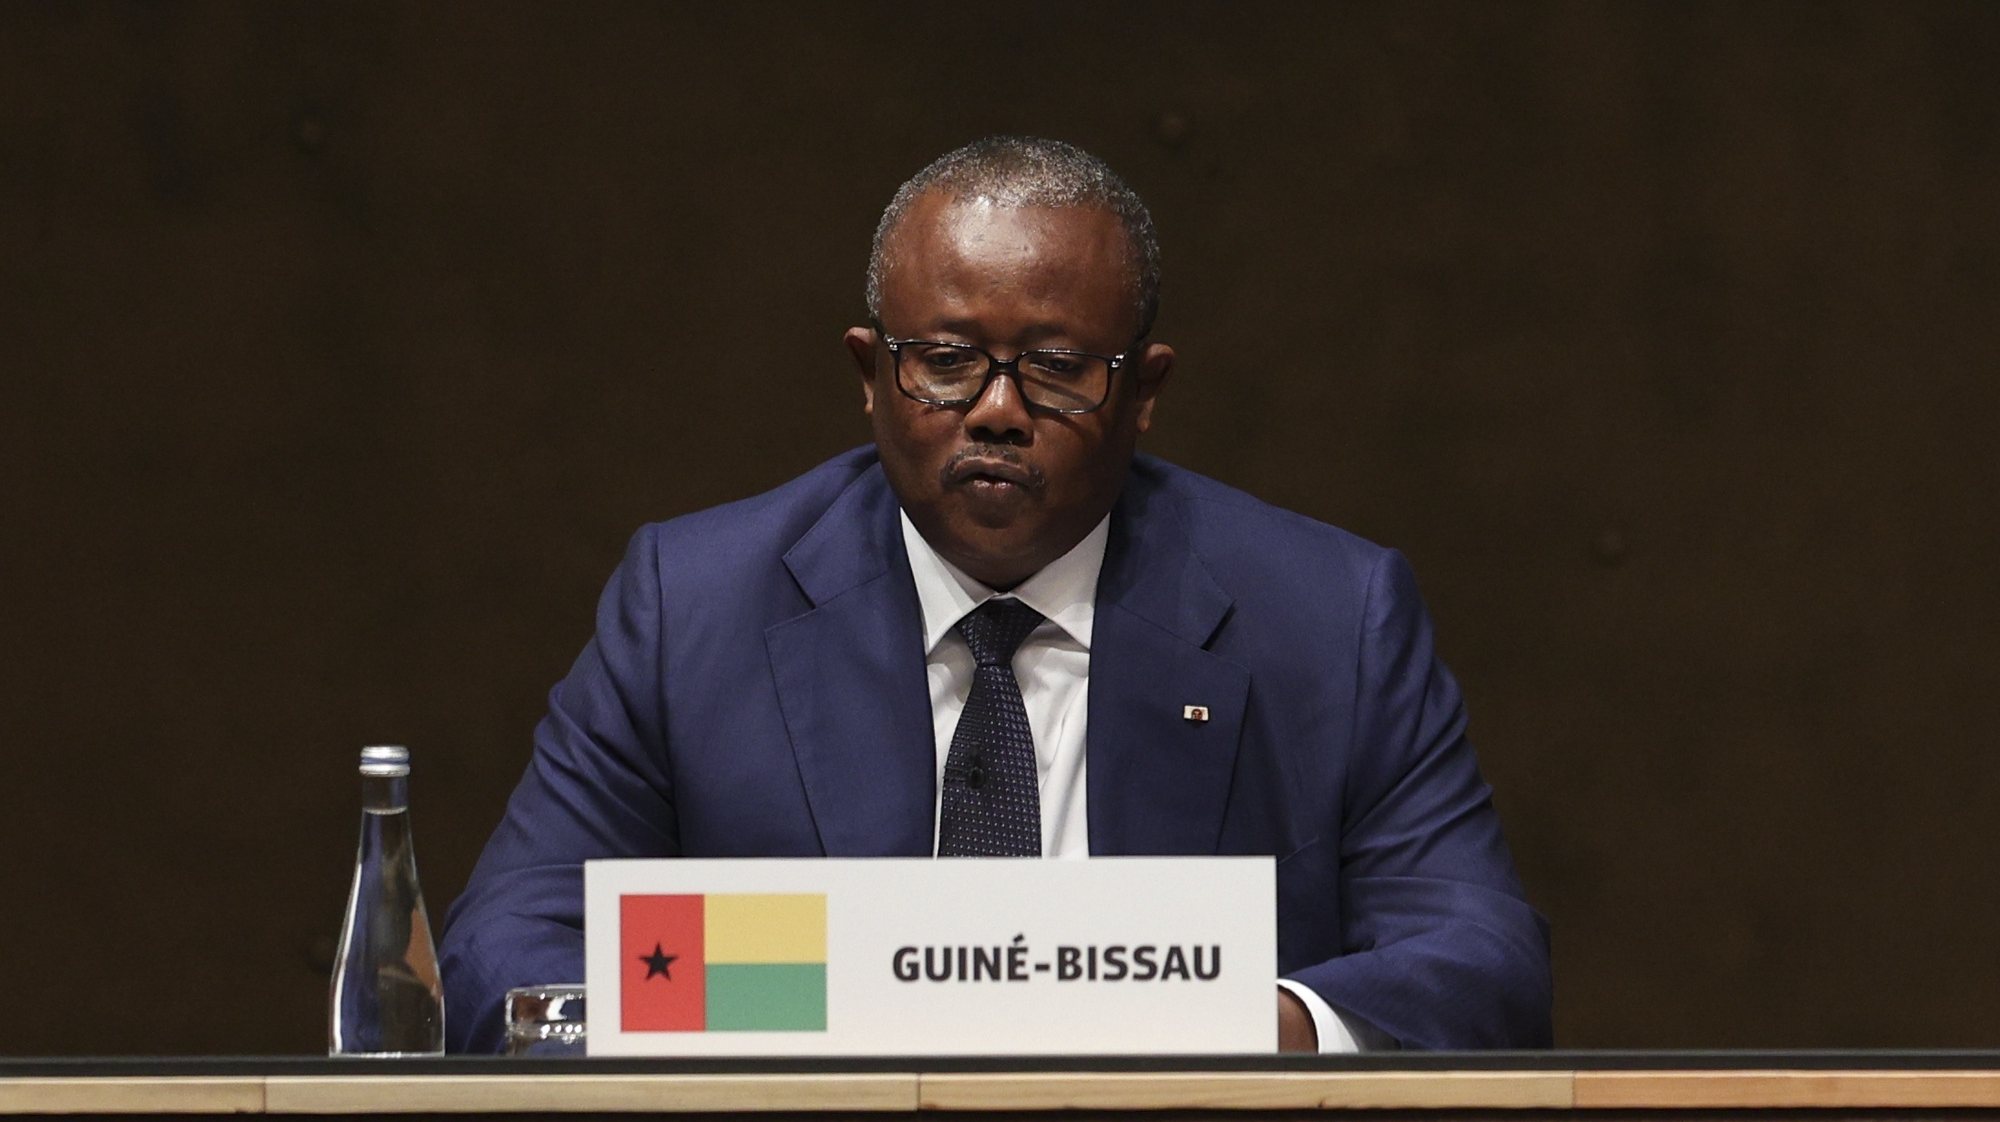 O Presidente da República da Guiné-Bissau, Umaro Sissoco Embalo, intervém na sessão comemorativa do 50º aniversário do 25 de abril de 1974, com os Chefes de Estado irmãos, cuja independência esteve ligada do 25 de abril em Lisboa, 25 de abril de 2024. MIGUEL A. LOPES/LUSA